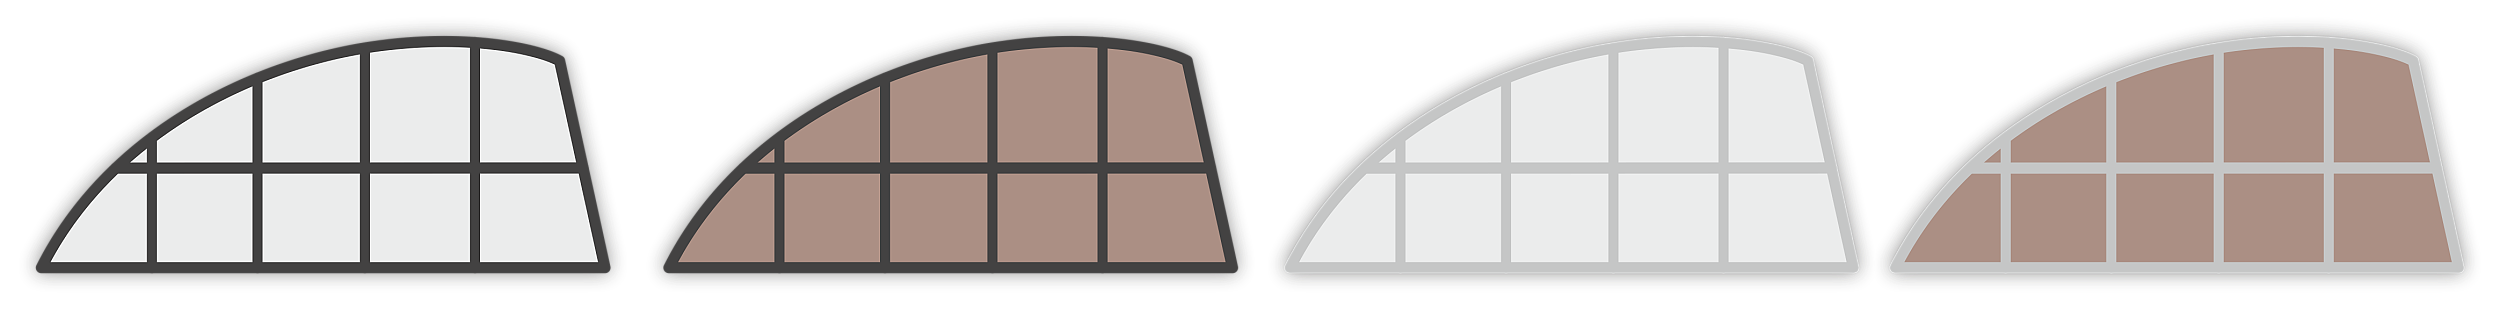 Farby polykarbonátu (číry, dymový bronz) a farba konštrukcie (antracit, elox)